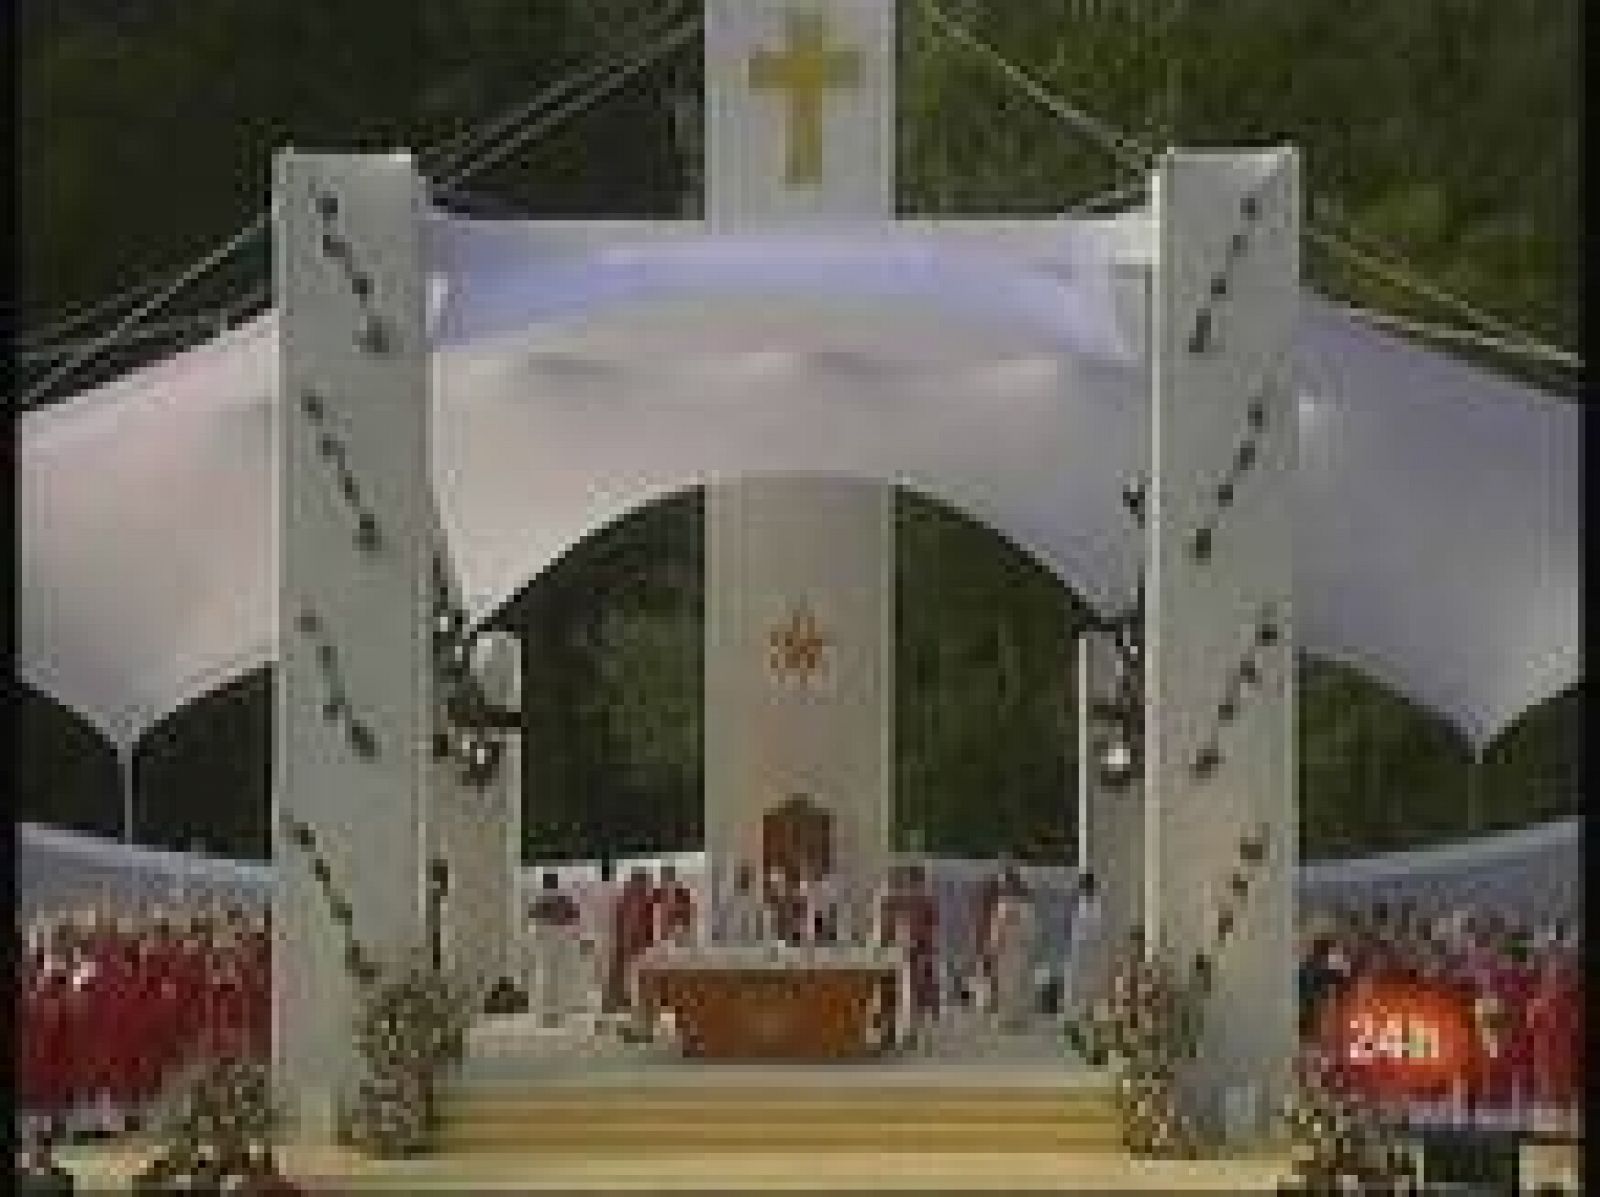  El Papa ofició ha oficiado hoy su primera misa en el santuario de Lourdes, lugar, según Benedicto XVI "de servicio fraterno, especialmente por la acogida a los enfermos, los pobres y todos los que sufren".